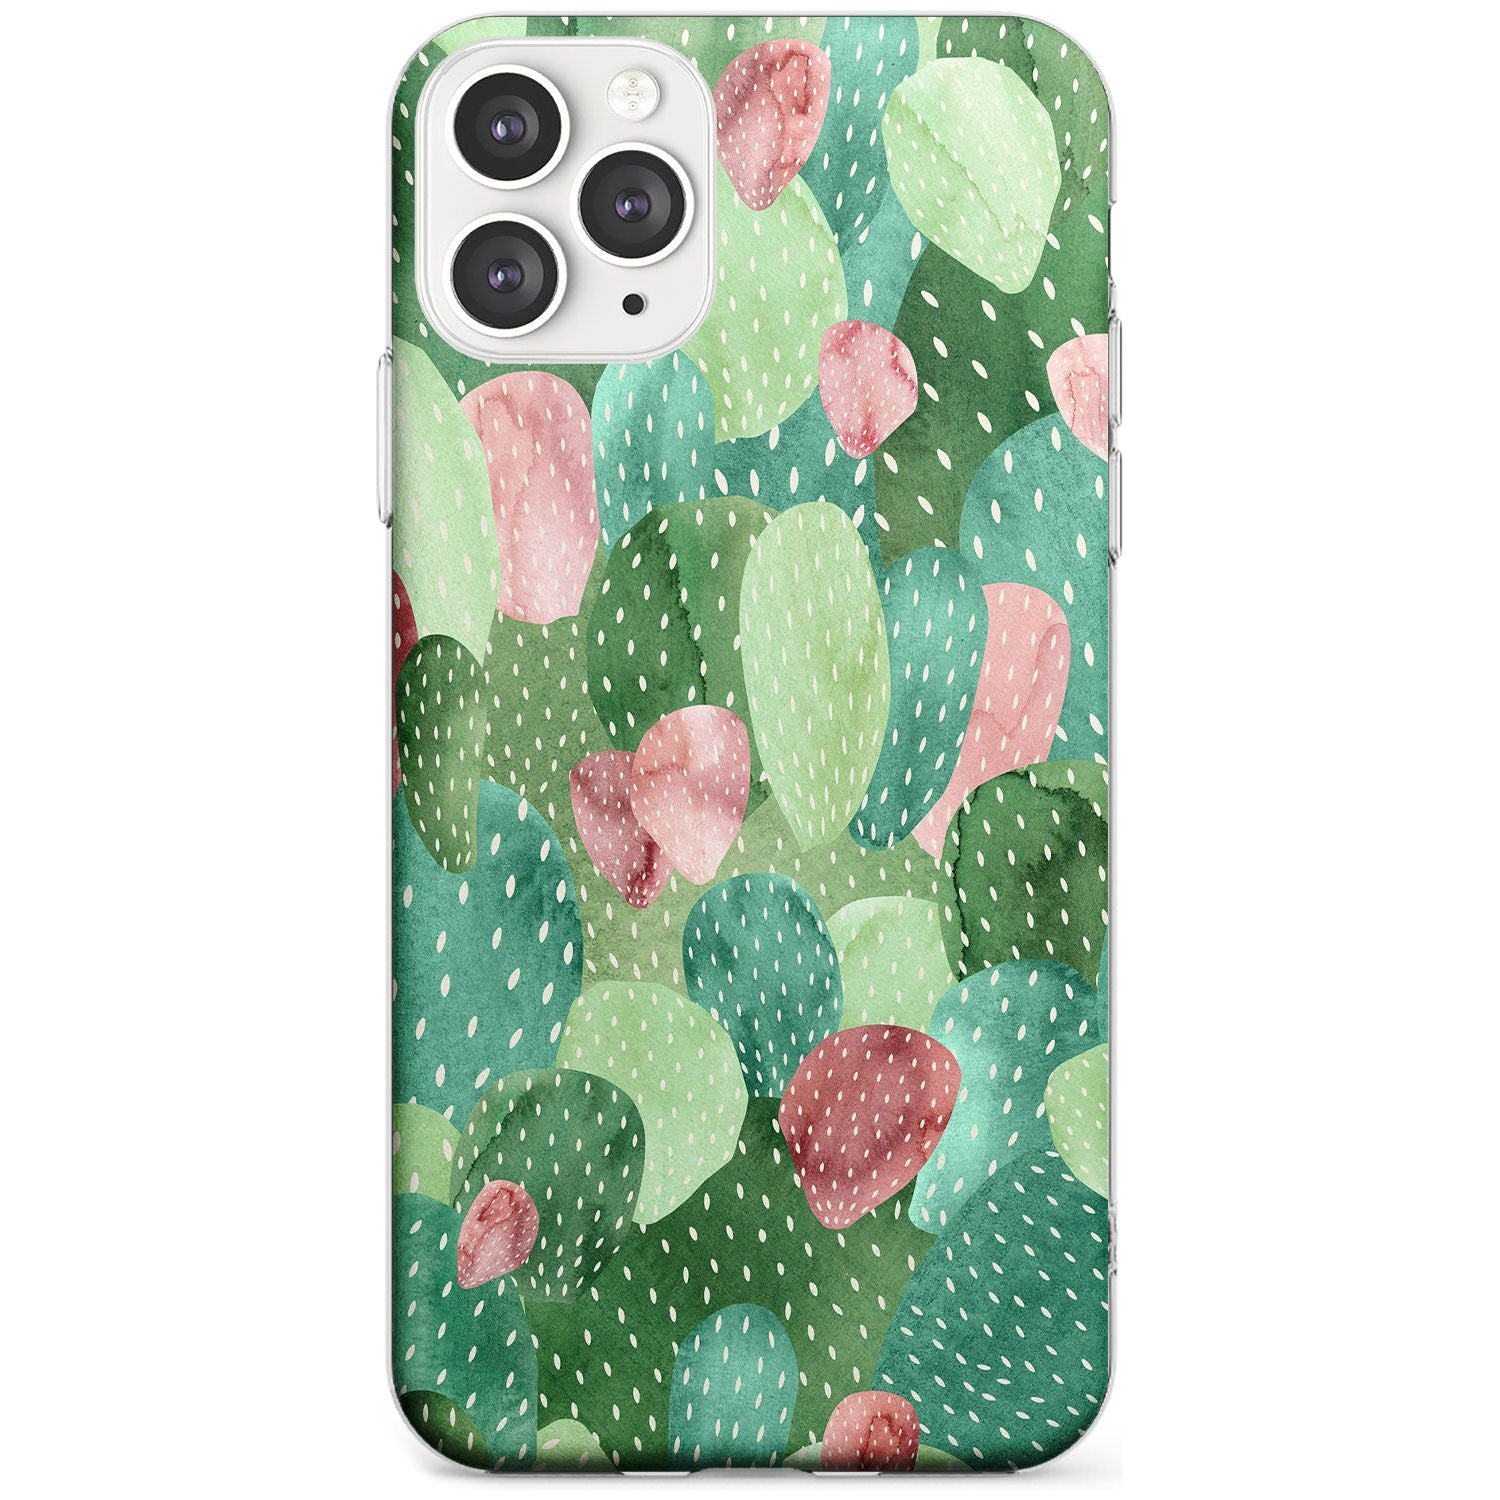 Colourful Cactus Mix Design Slim TPU Phone Case for iPhone 11 Pro Max